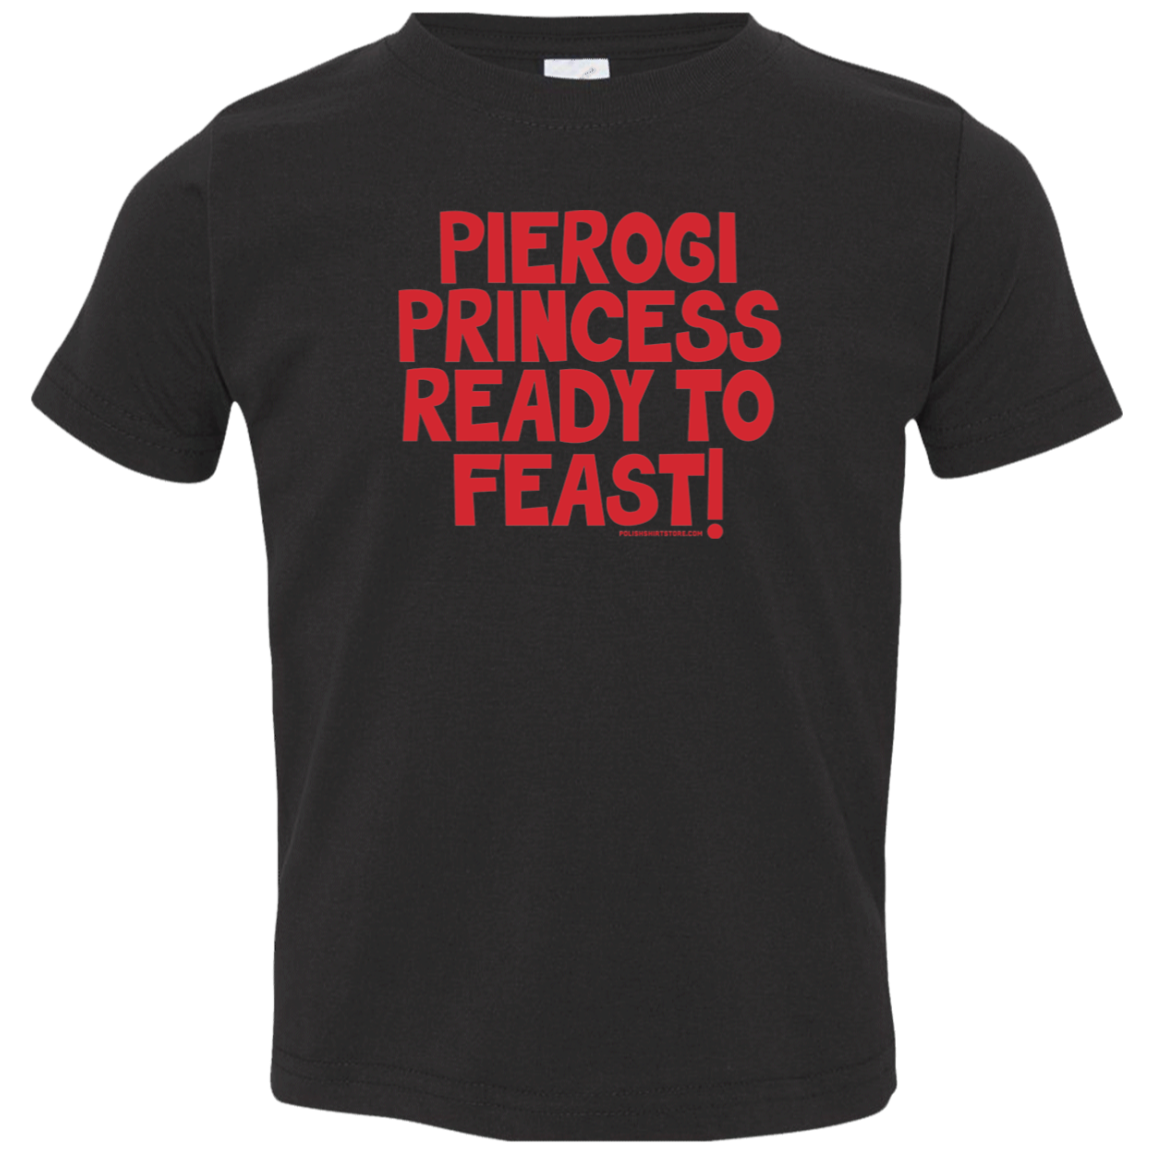 Pierogi Princess Ready To Feast Infant & Toddler T-Shirt Apparel CustomCat Toddler T-Shirt Black 2T